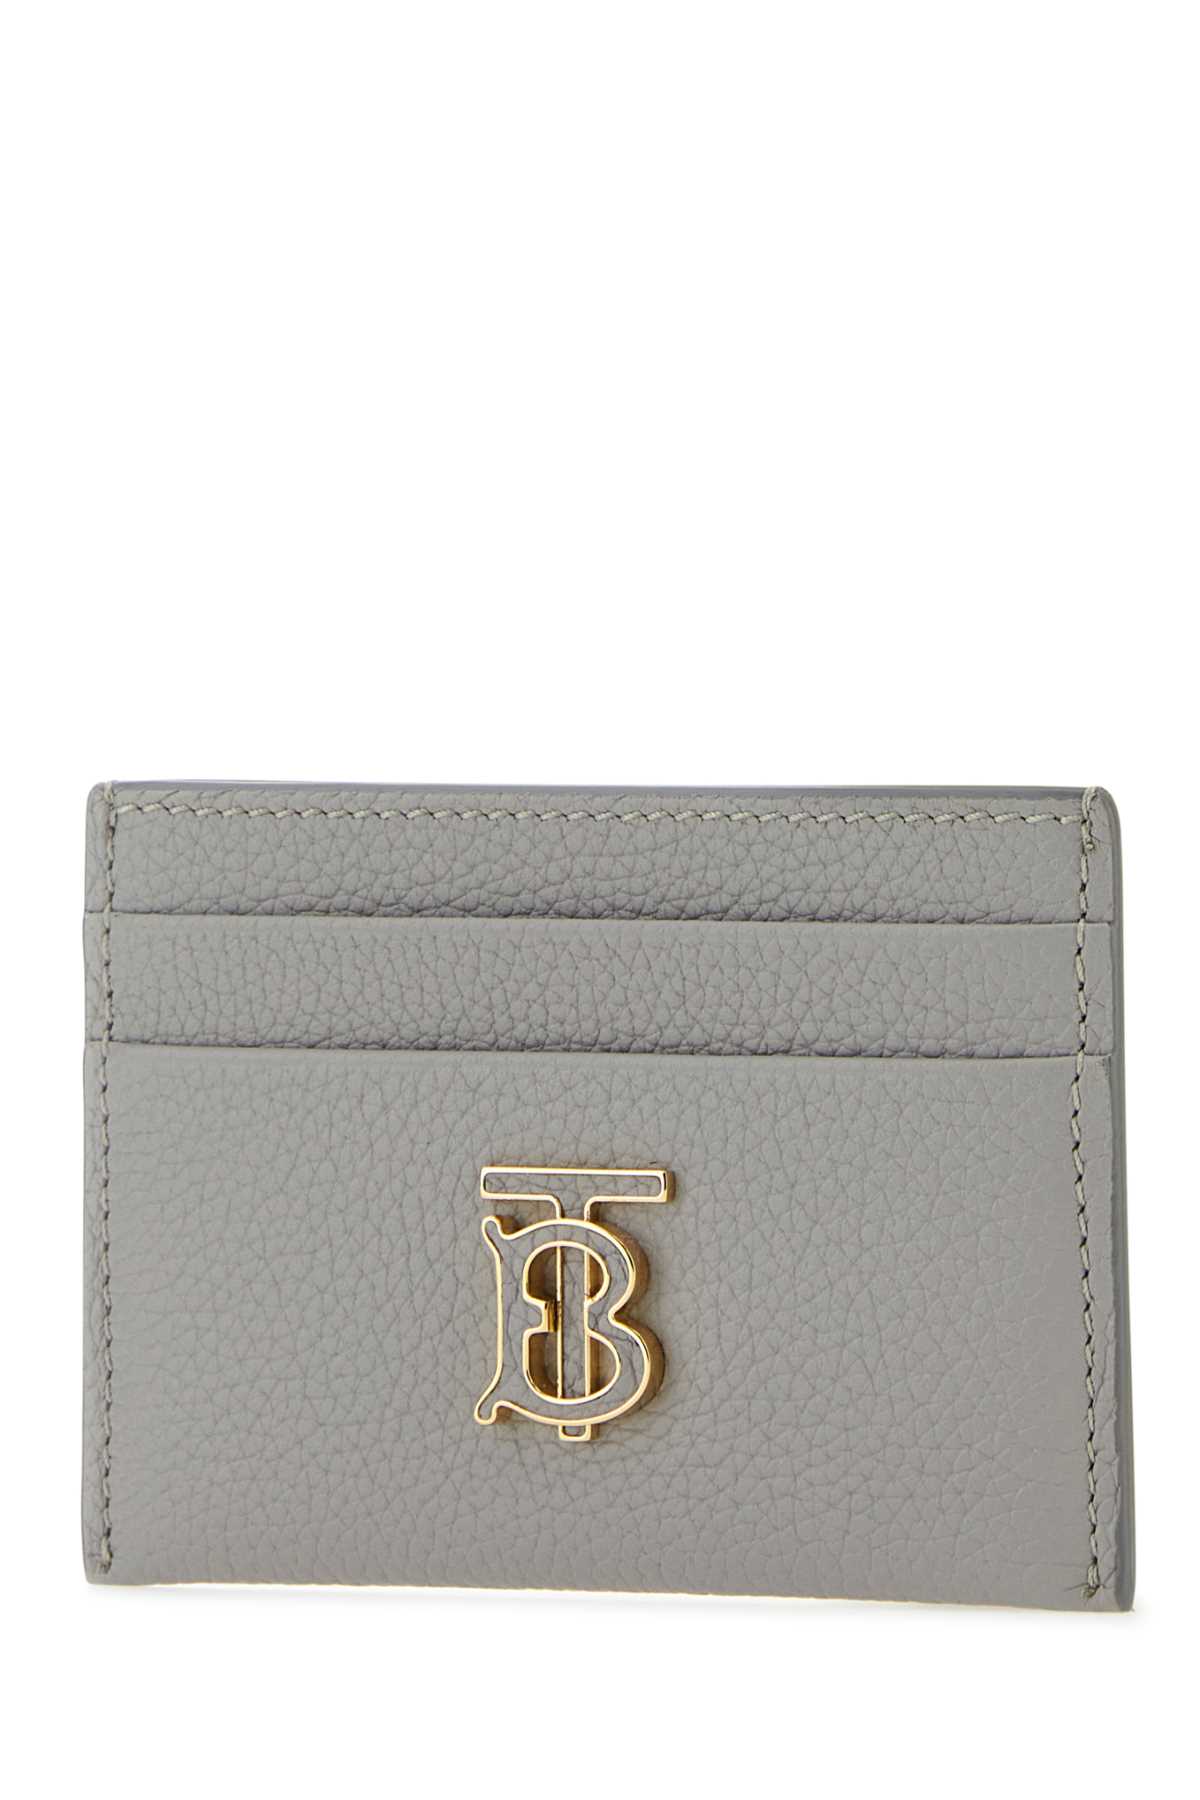 Shop Burberry Grey Leather Tb Card Holder In Lightgreymelange